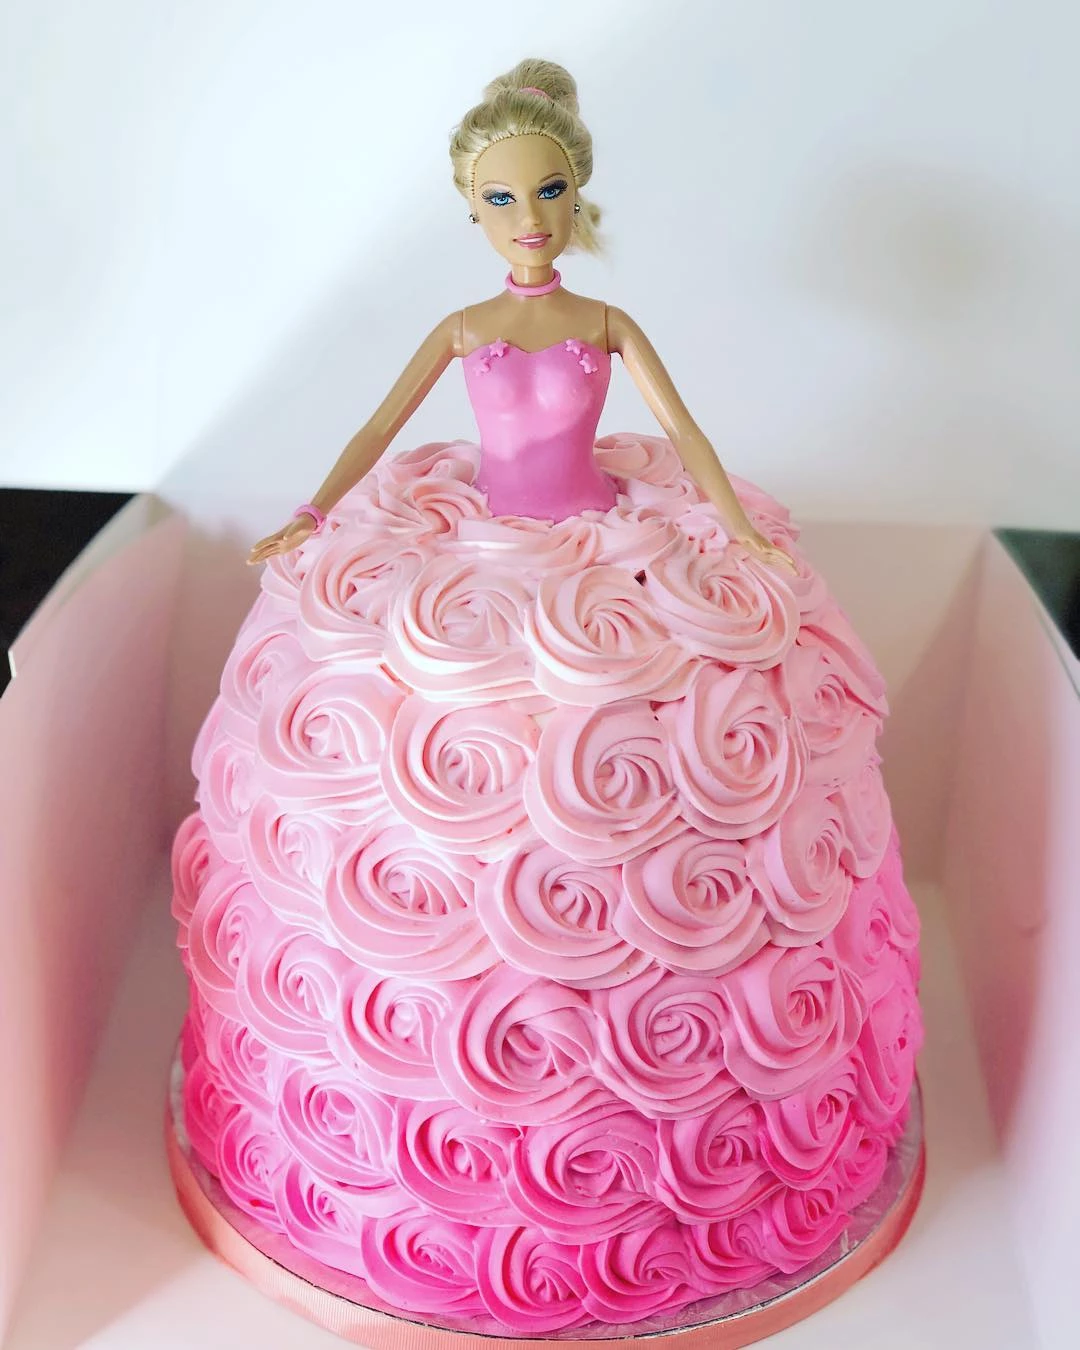 Foto de bolo da barbie 56 - 59